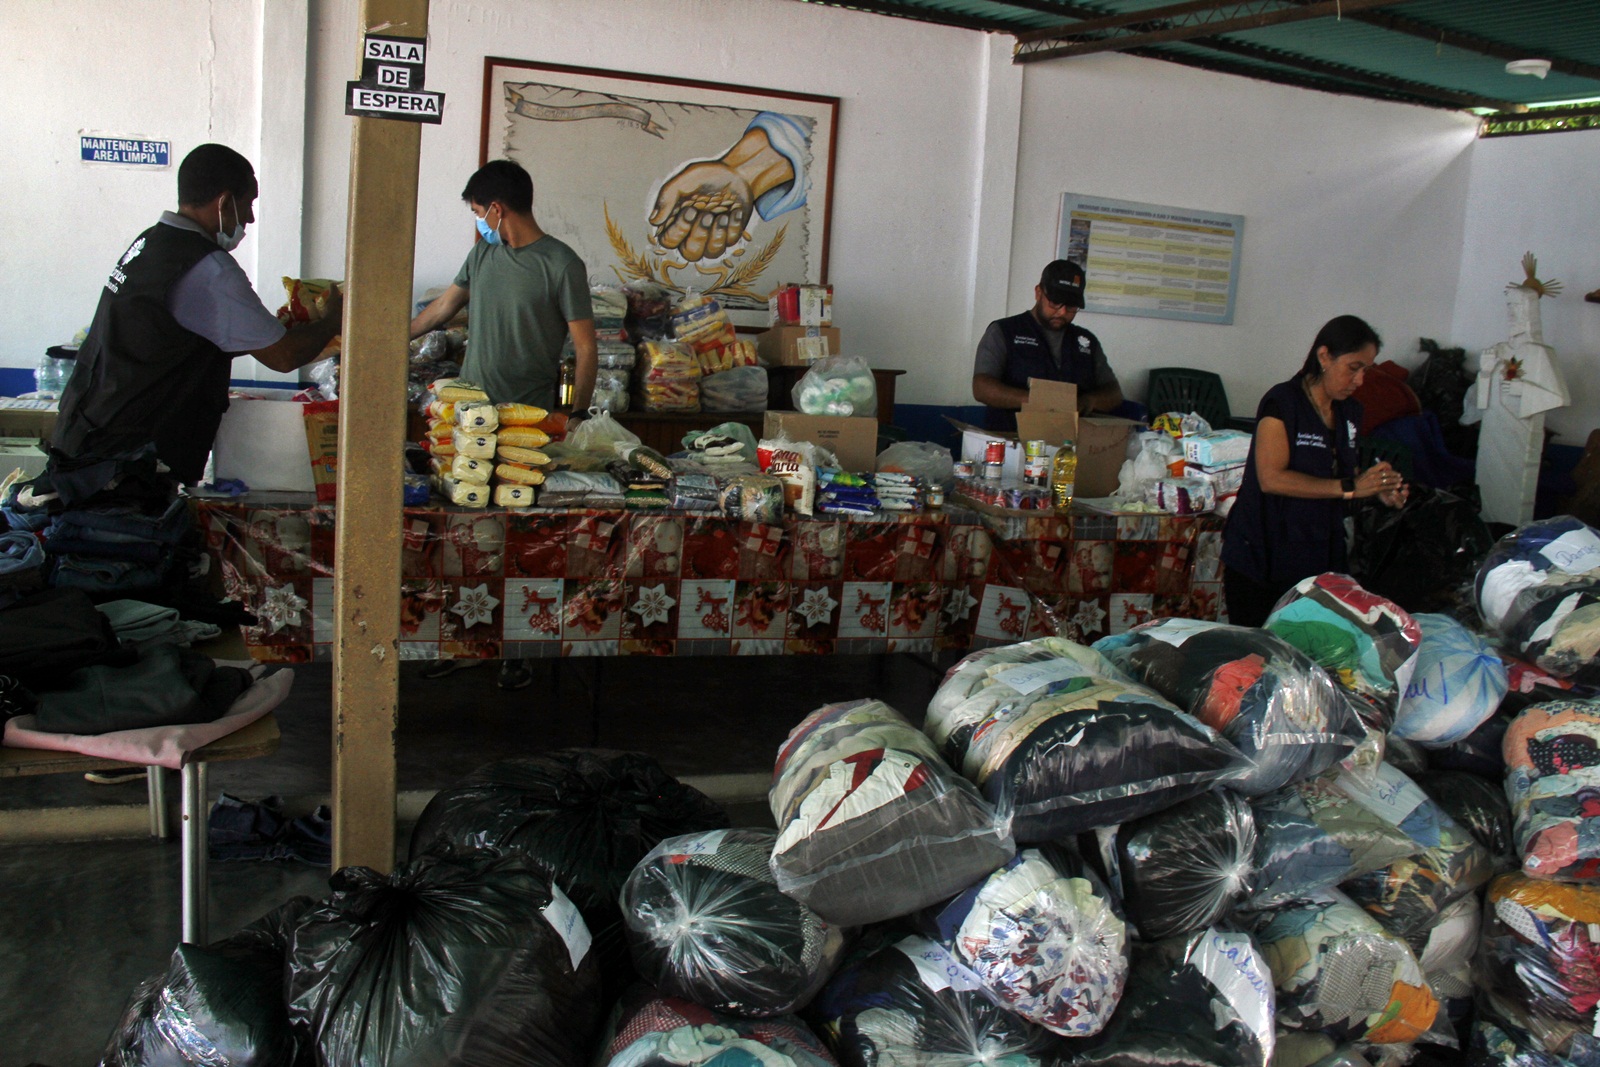 Caritas Maturín enviroa este viernes primer lote de ayuda a los afectados en Cumanacoa